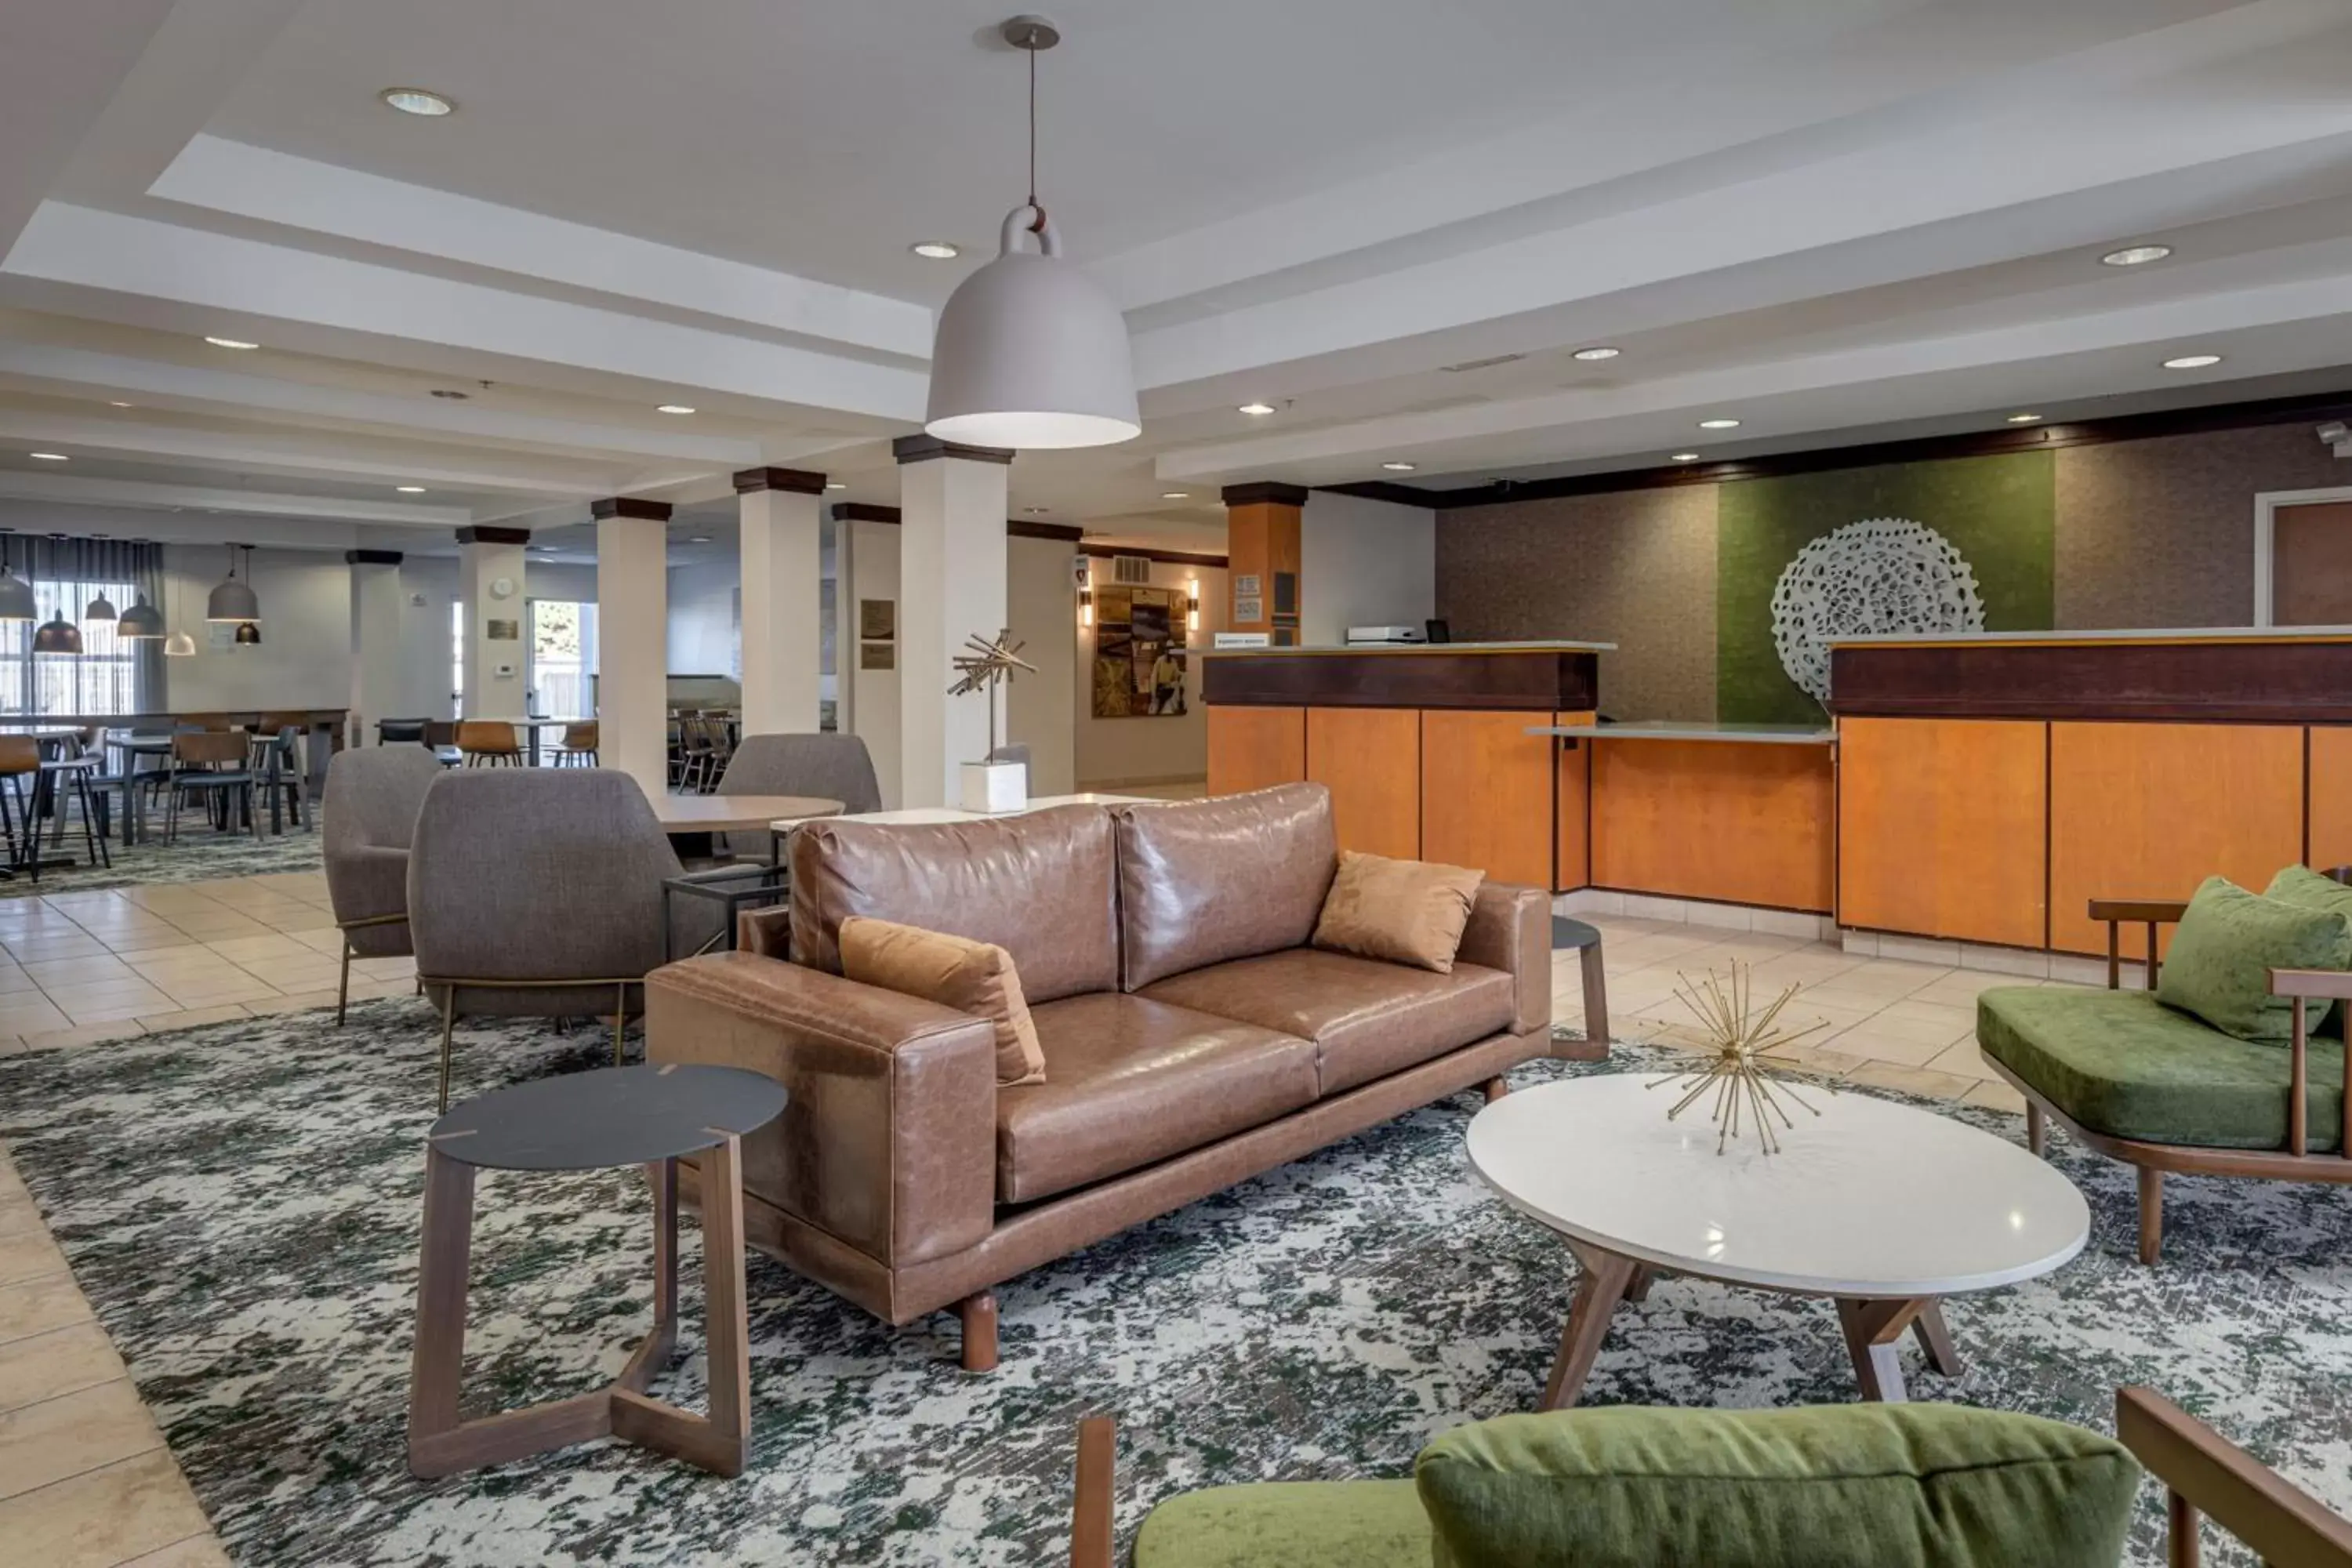 Lobby or reception, Lobby/Reception in Fairfield Inn & Suites by Marriott Lawton